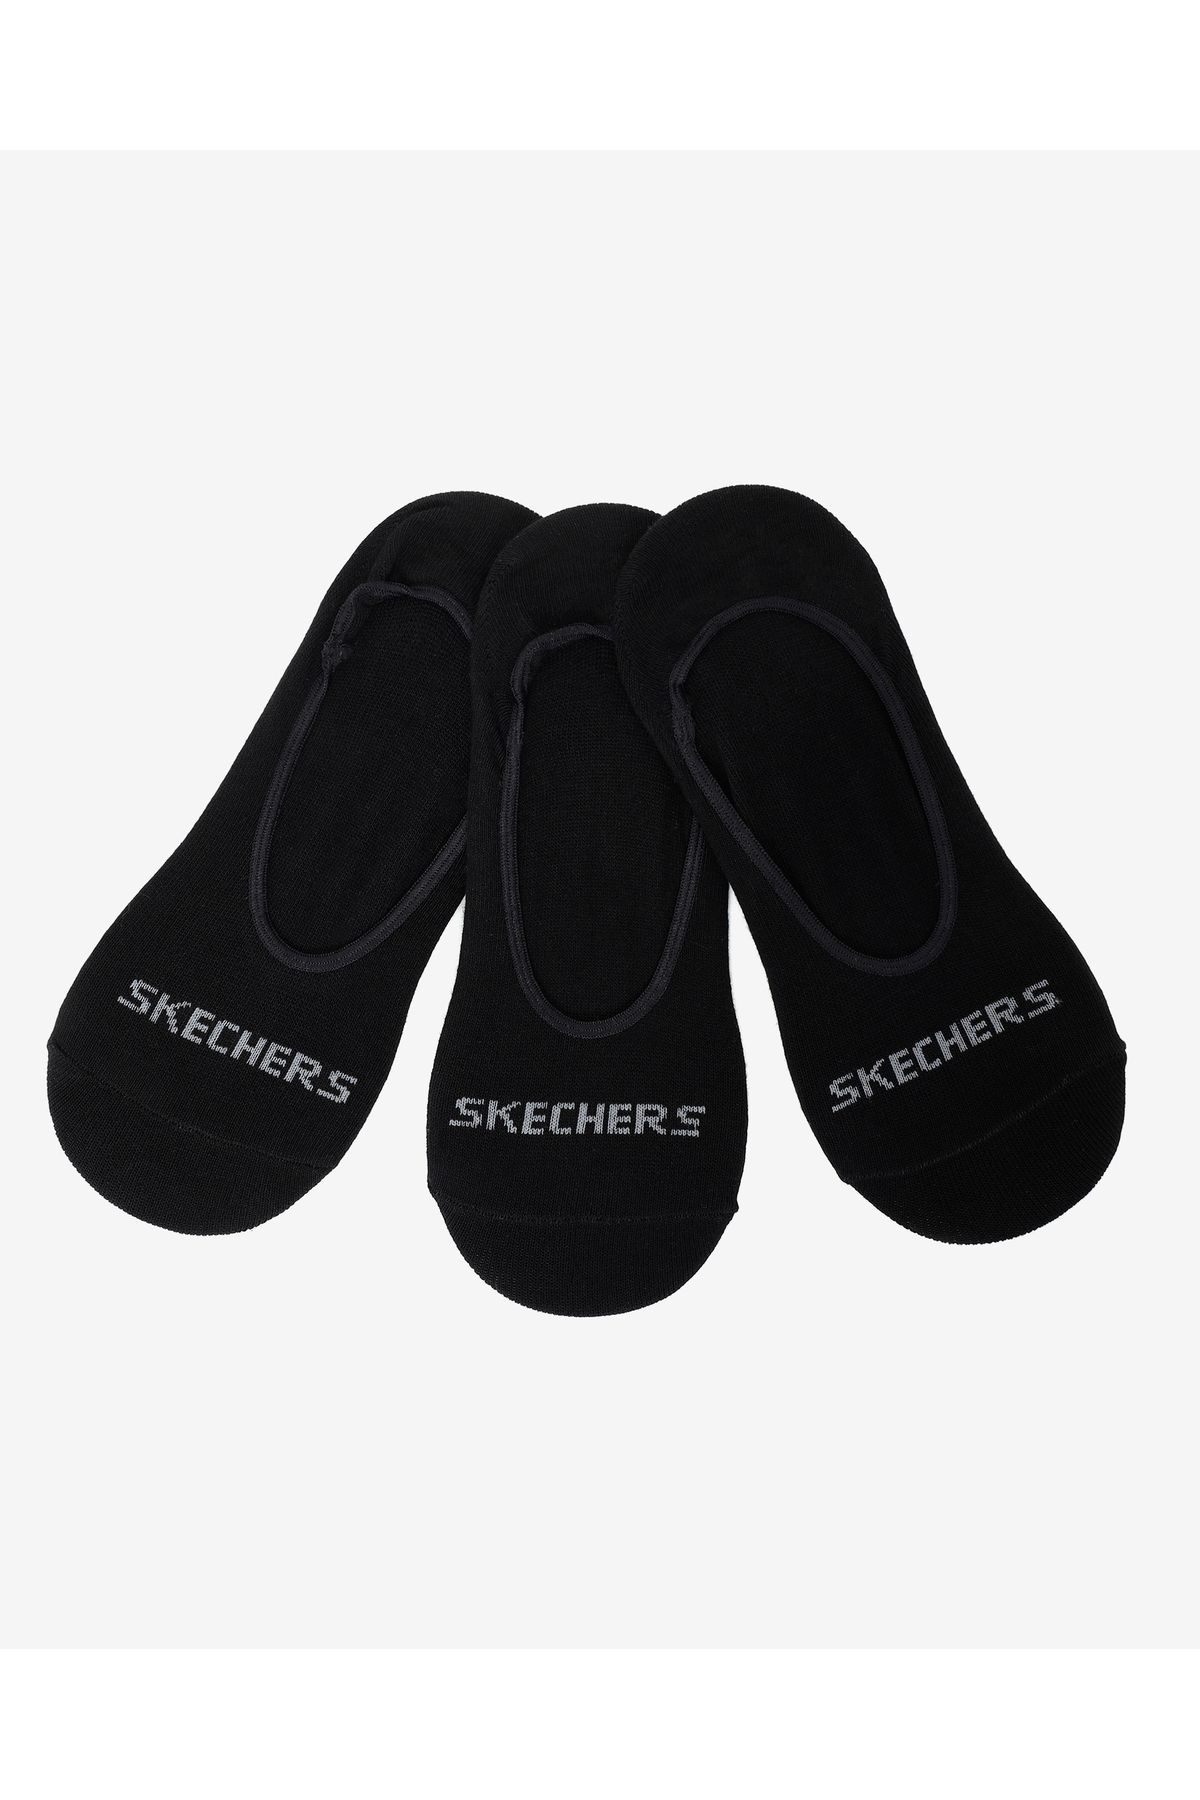 Skechers U 3 Pack Liner Socks Unisex Siyah Çorap S212289-001